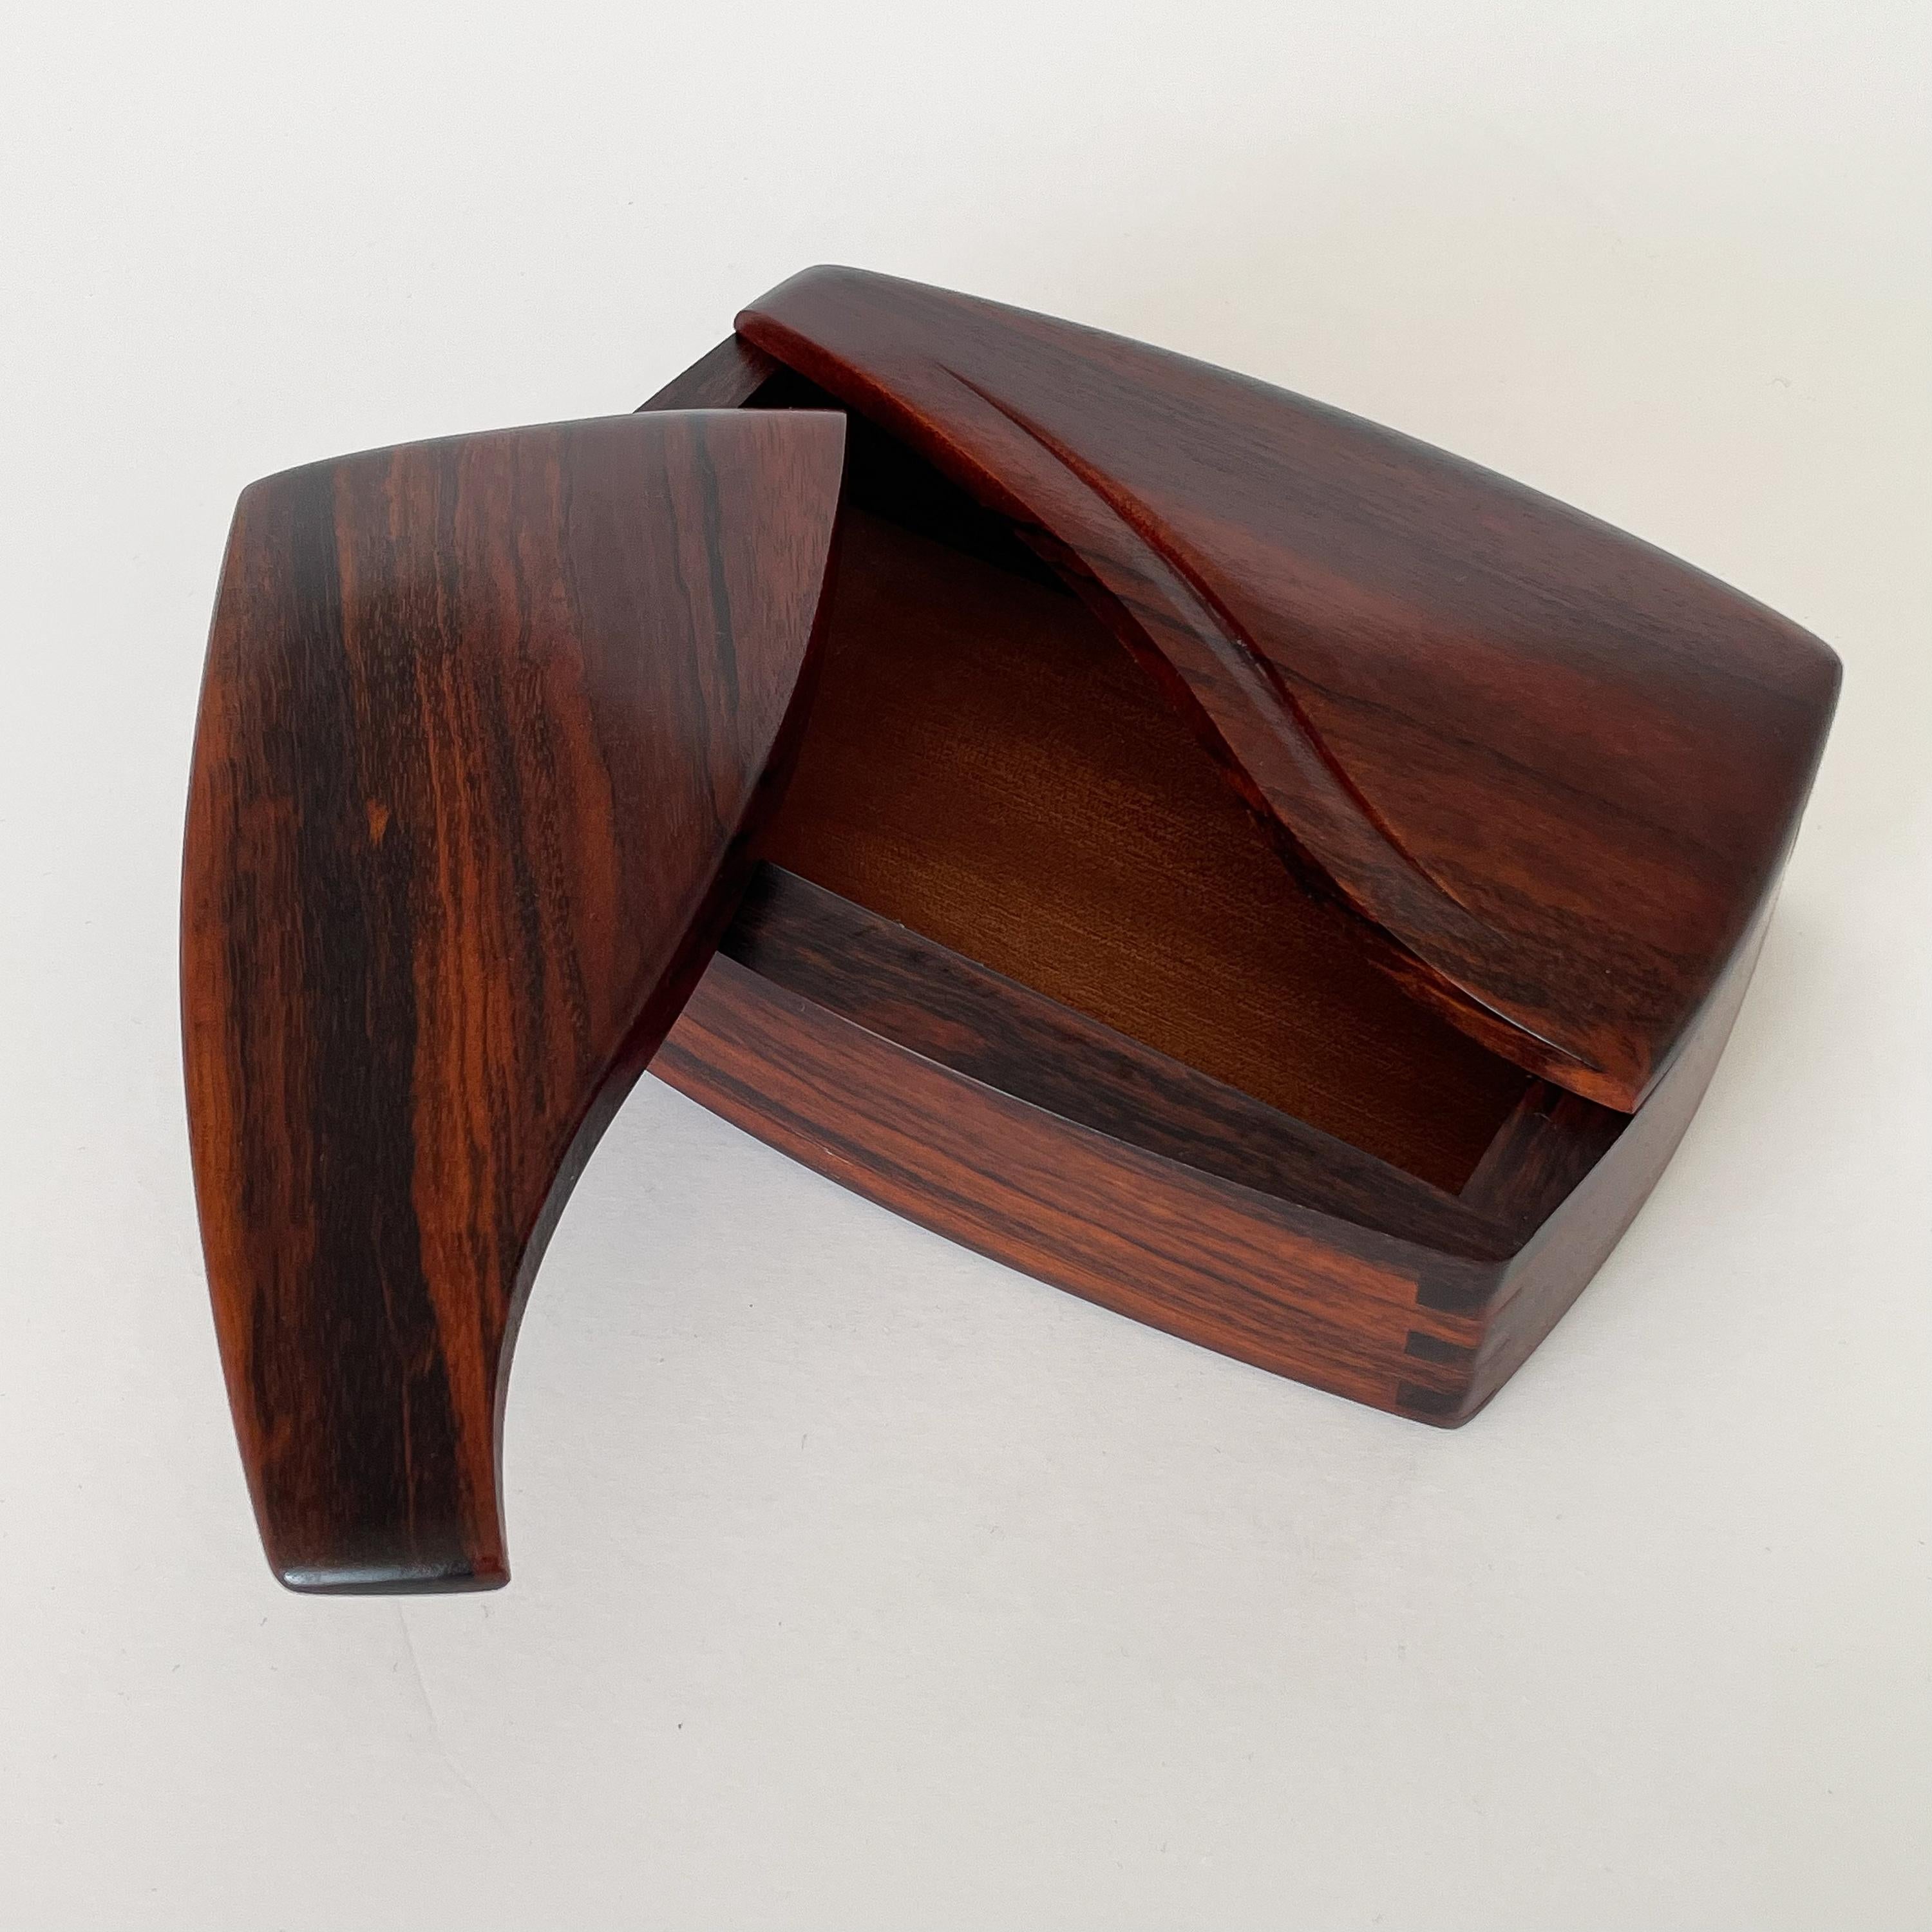 American Craig Brown Studio Craft Sculptural Rosewood Box